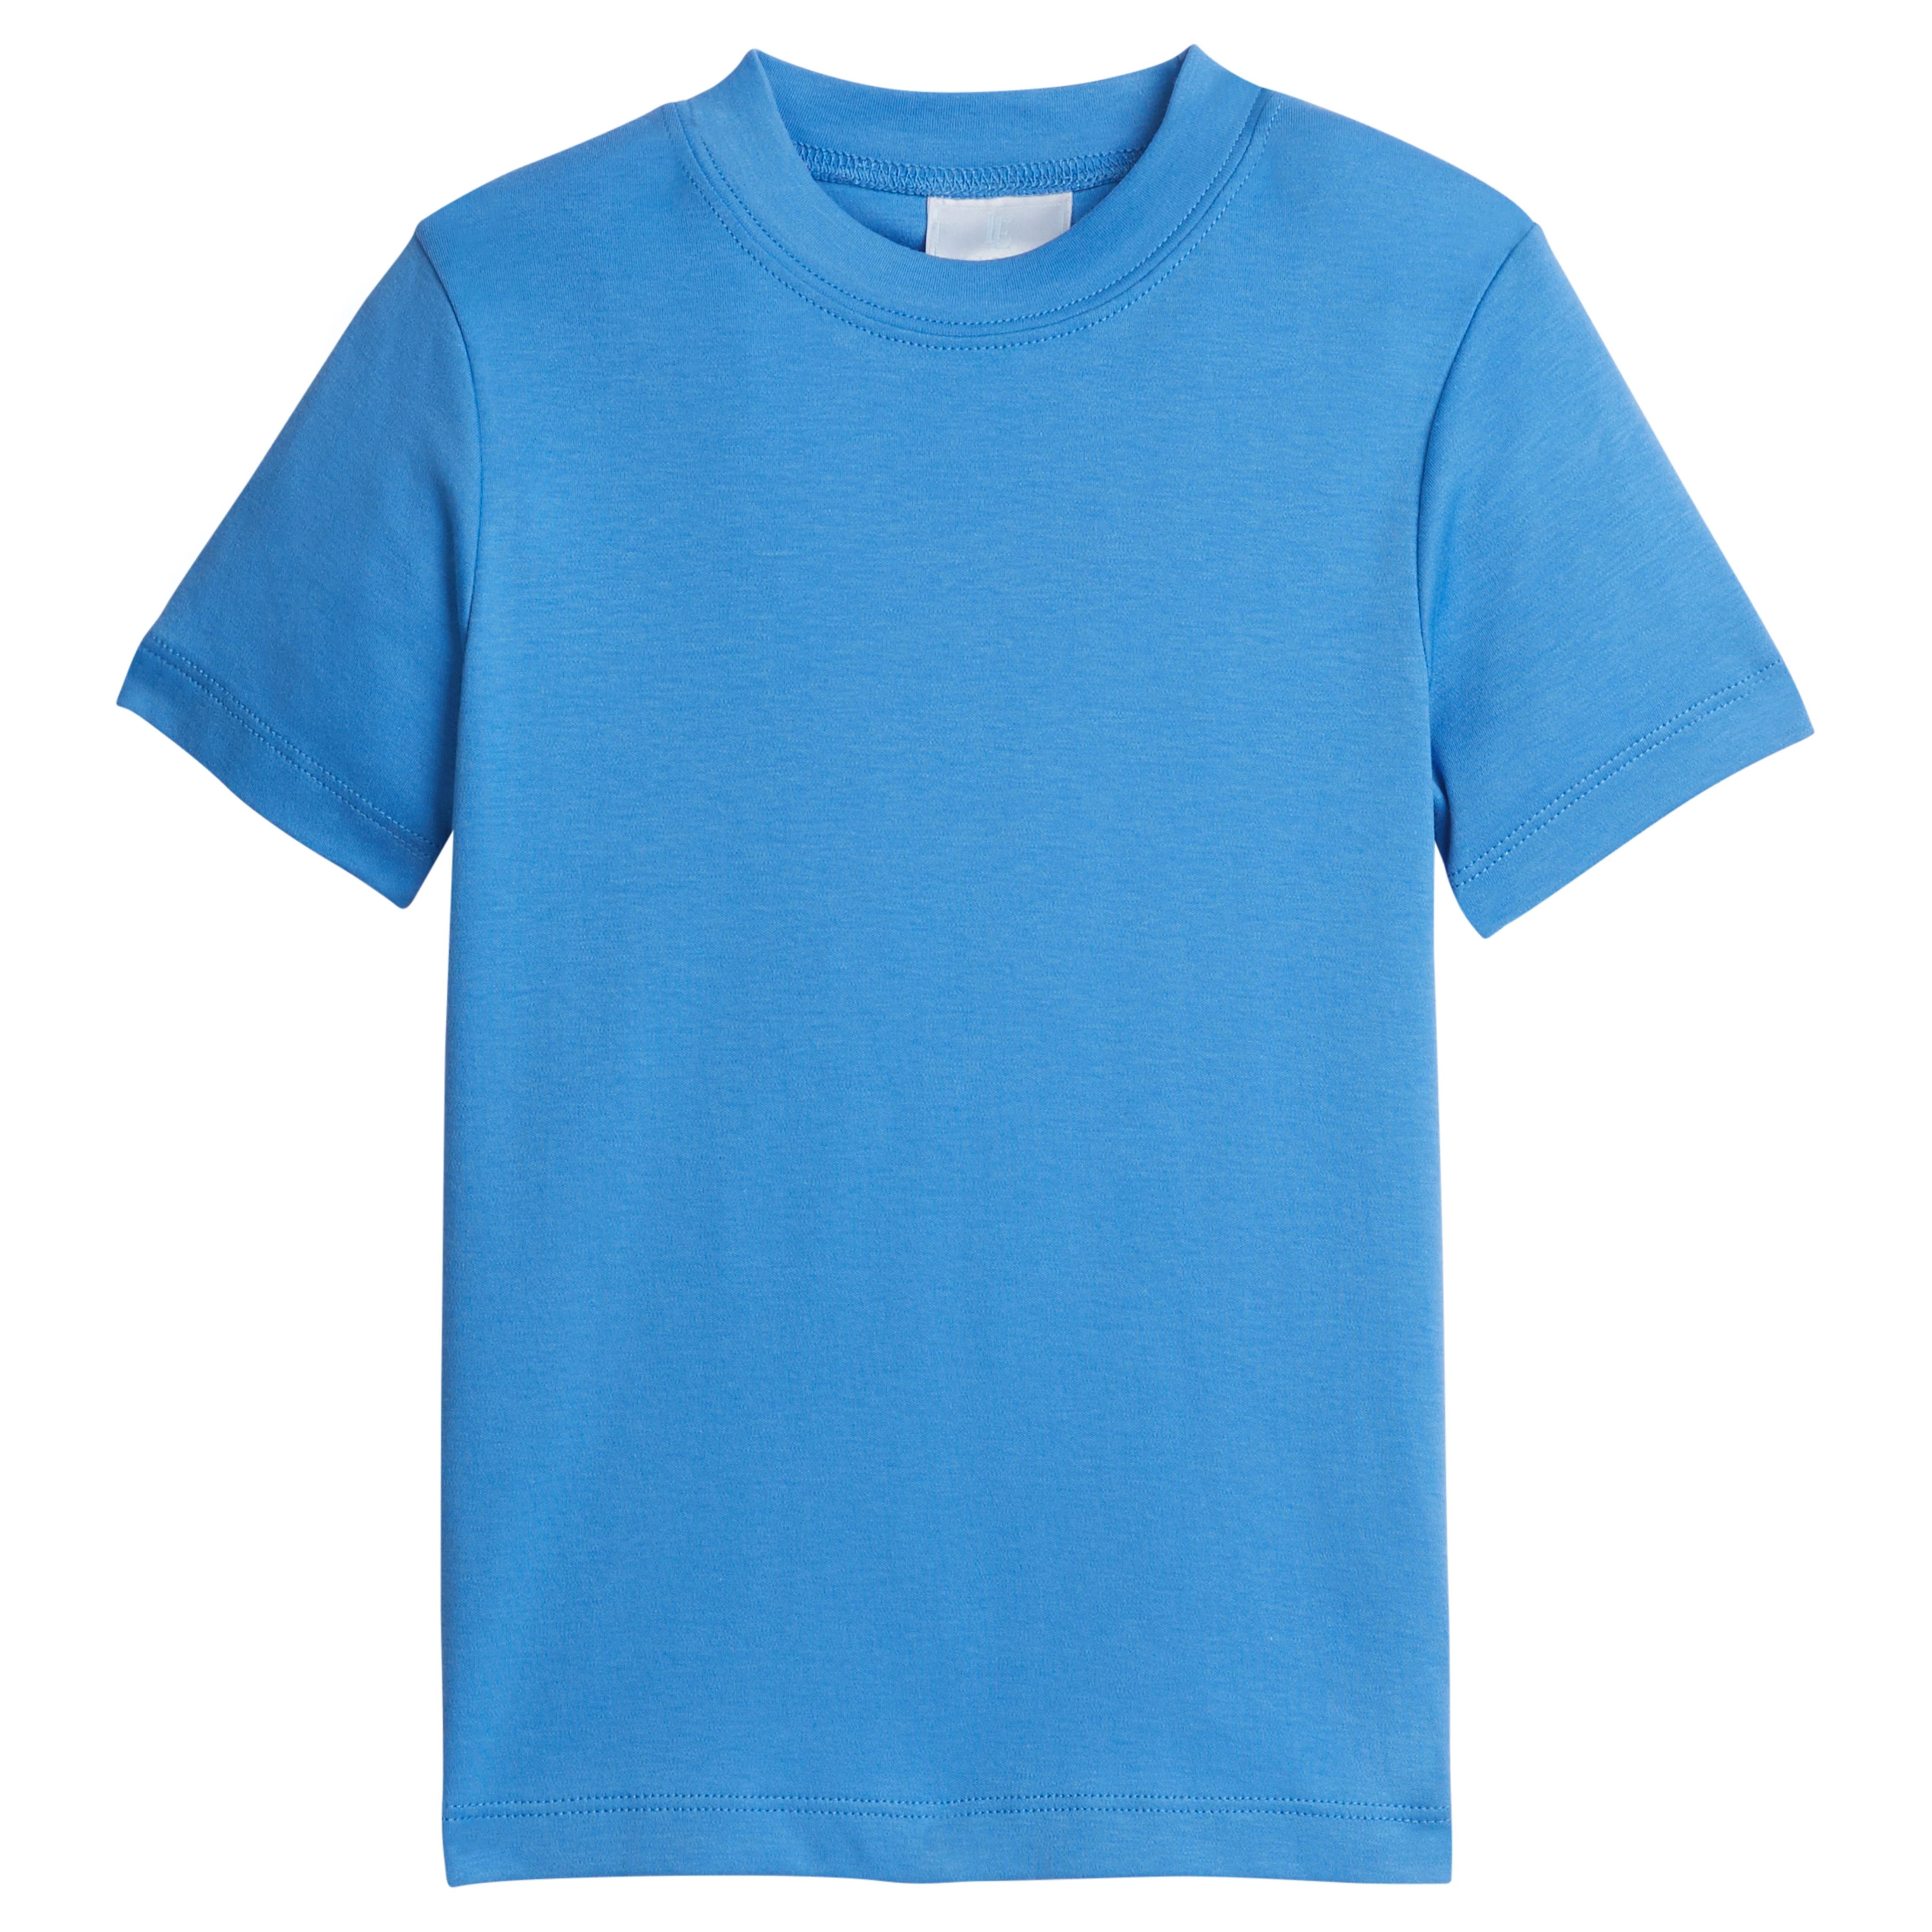 Toddler's Classic Blue Tee - Little Boy's T Shirt | Little English